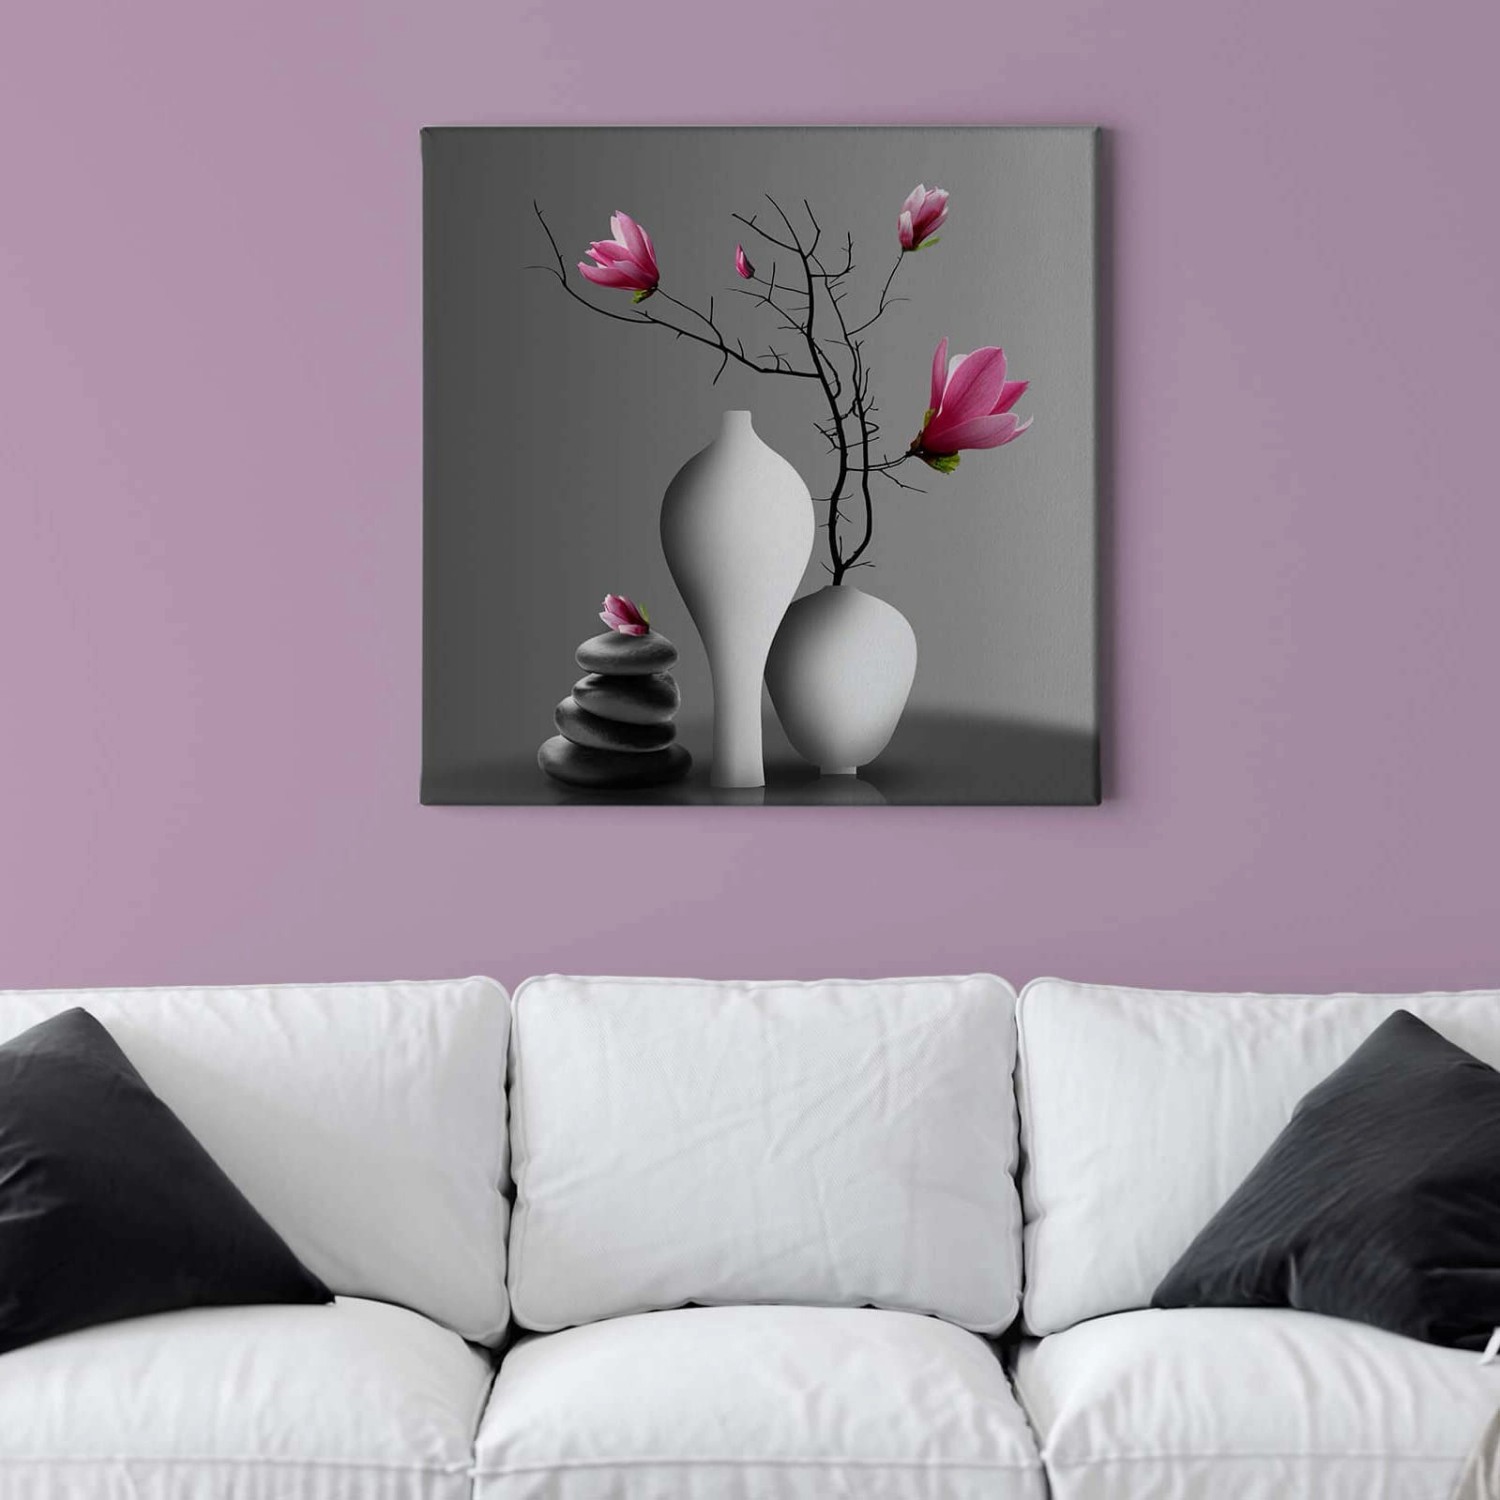 Bricoflor Blumen Bild Mit Magnolie Blume In Vase Leinwandbild Im Wellness Stil Modernes Wandbild In Grau Und Pink Mit St